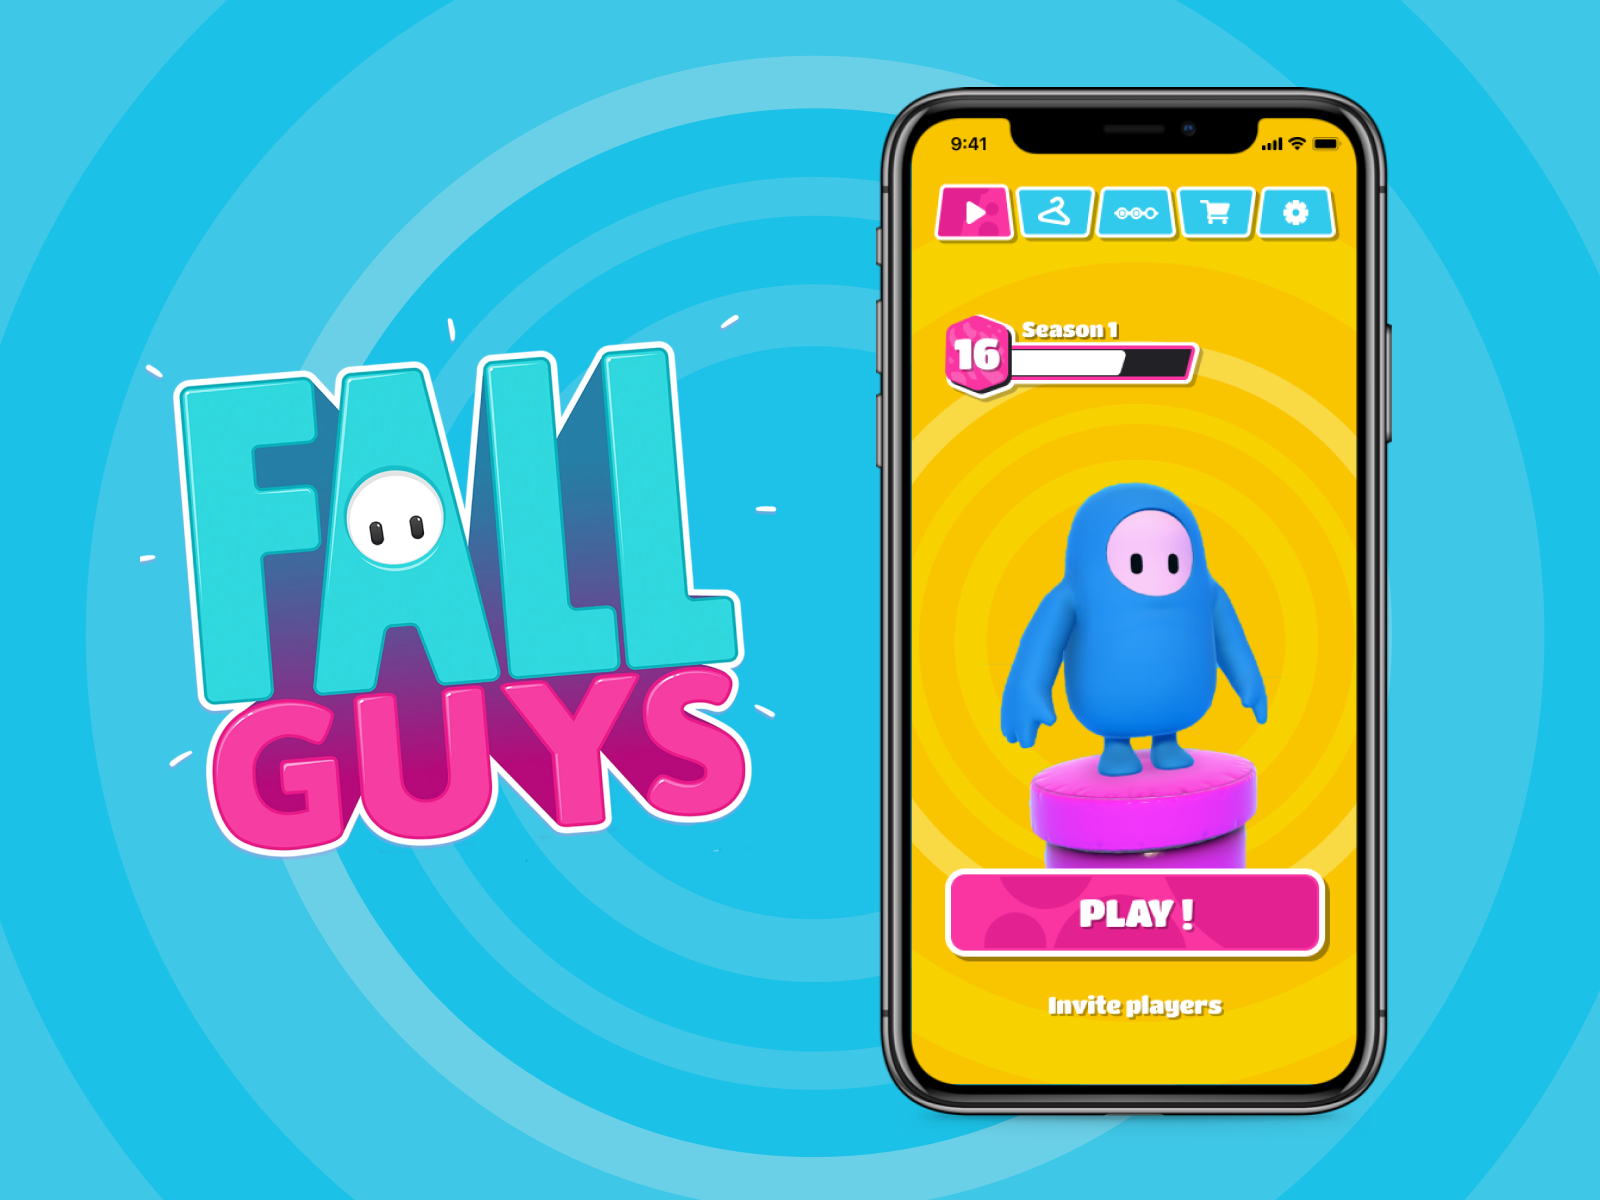 Fall Guys - Mobile by Daniel Motta on Dribbble